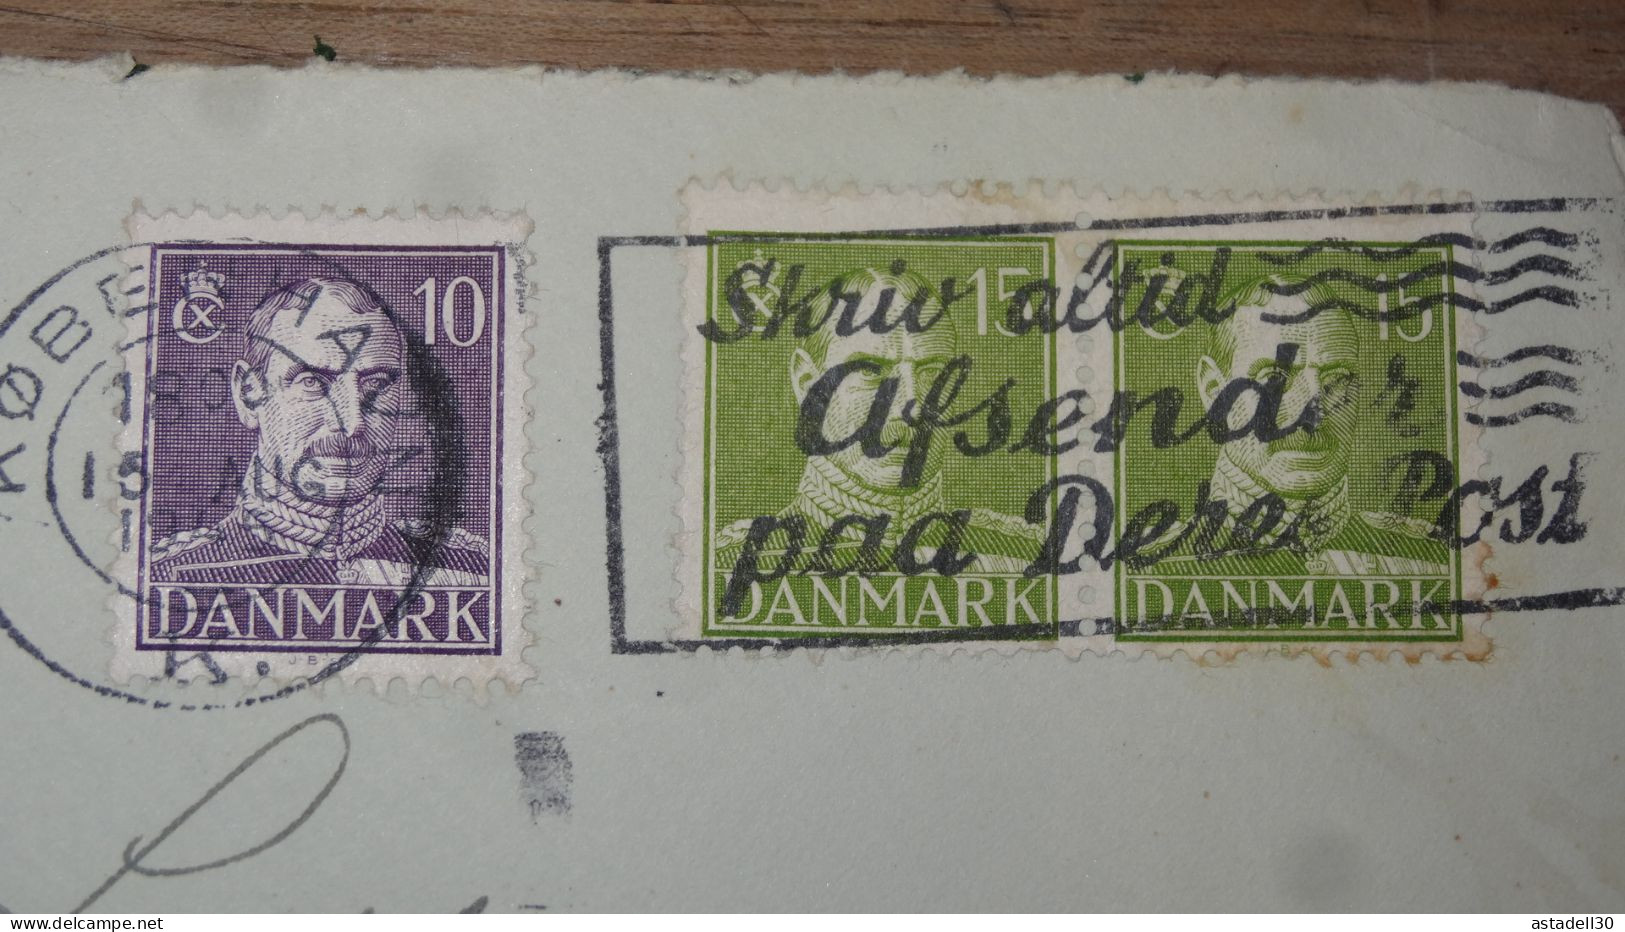 Enveloppe DANMARK, Censored, 1945  ............ Boite1 .............. 240424-249 - Covers & Documents